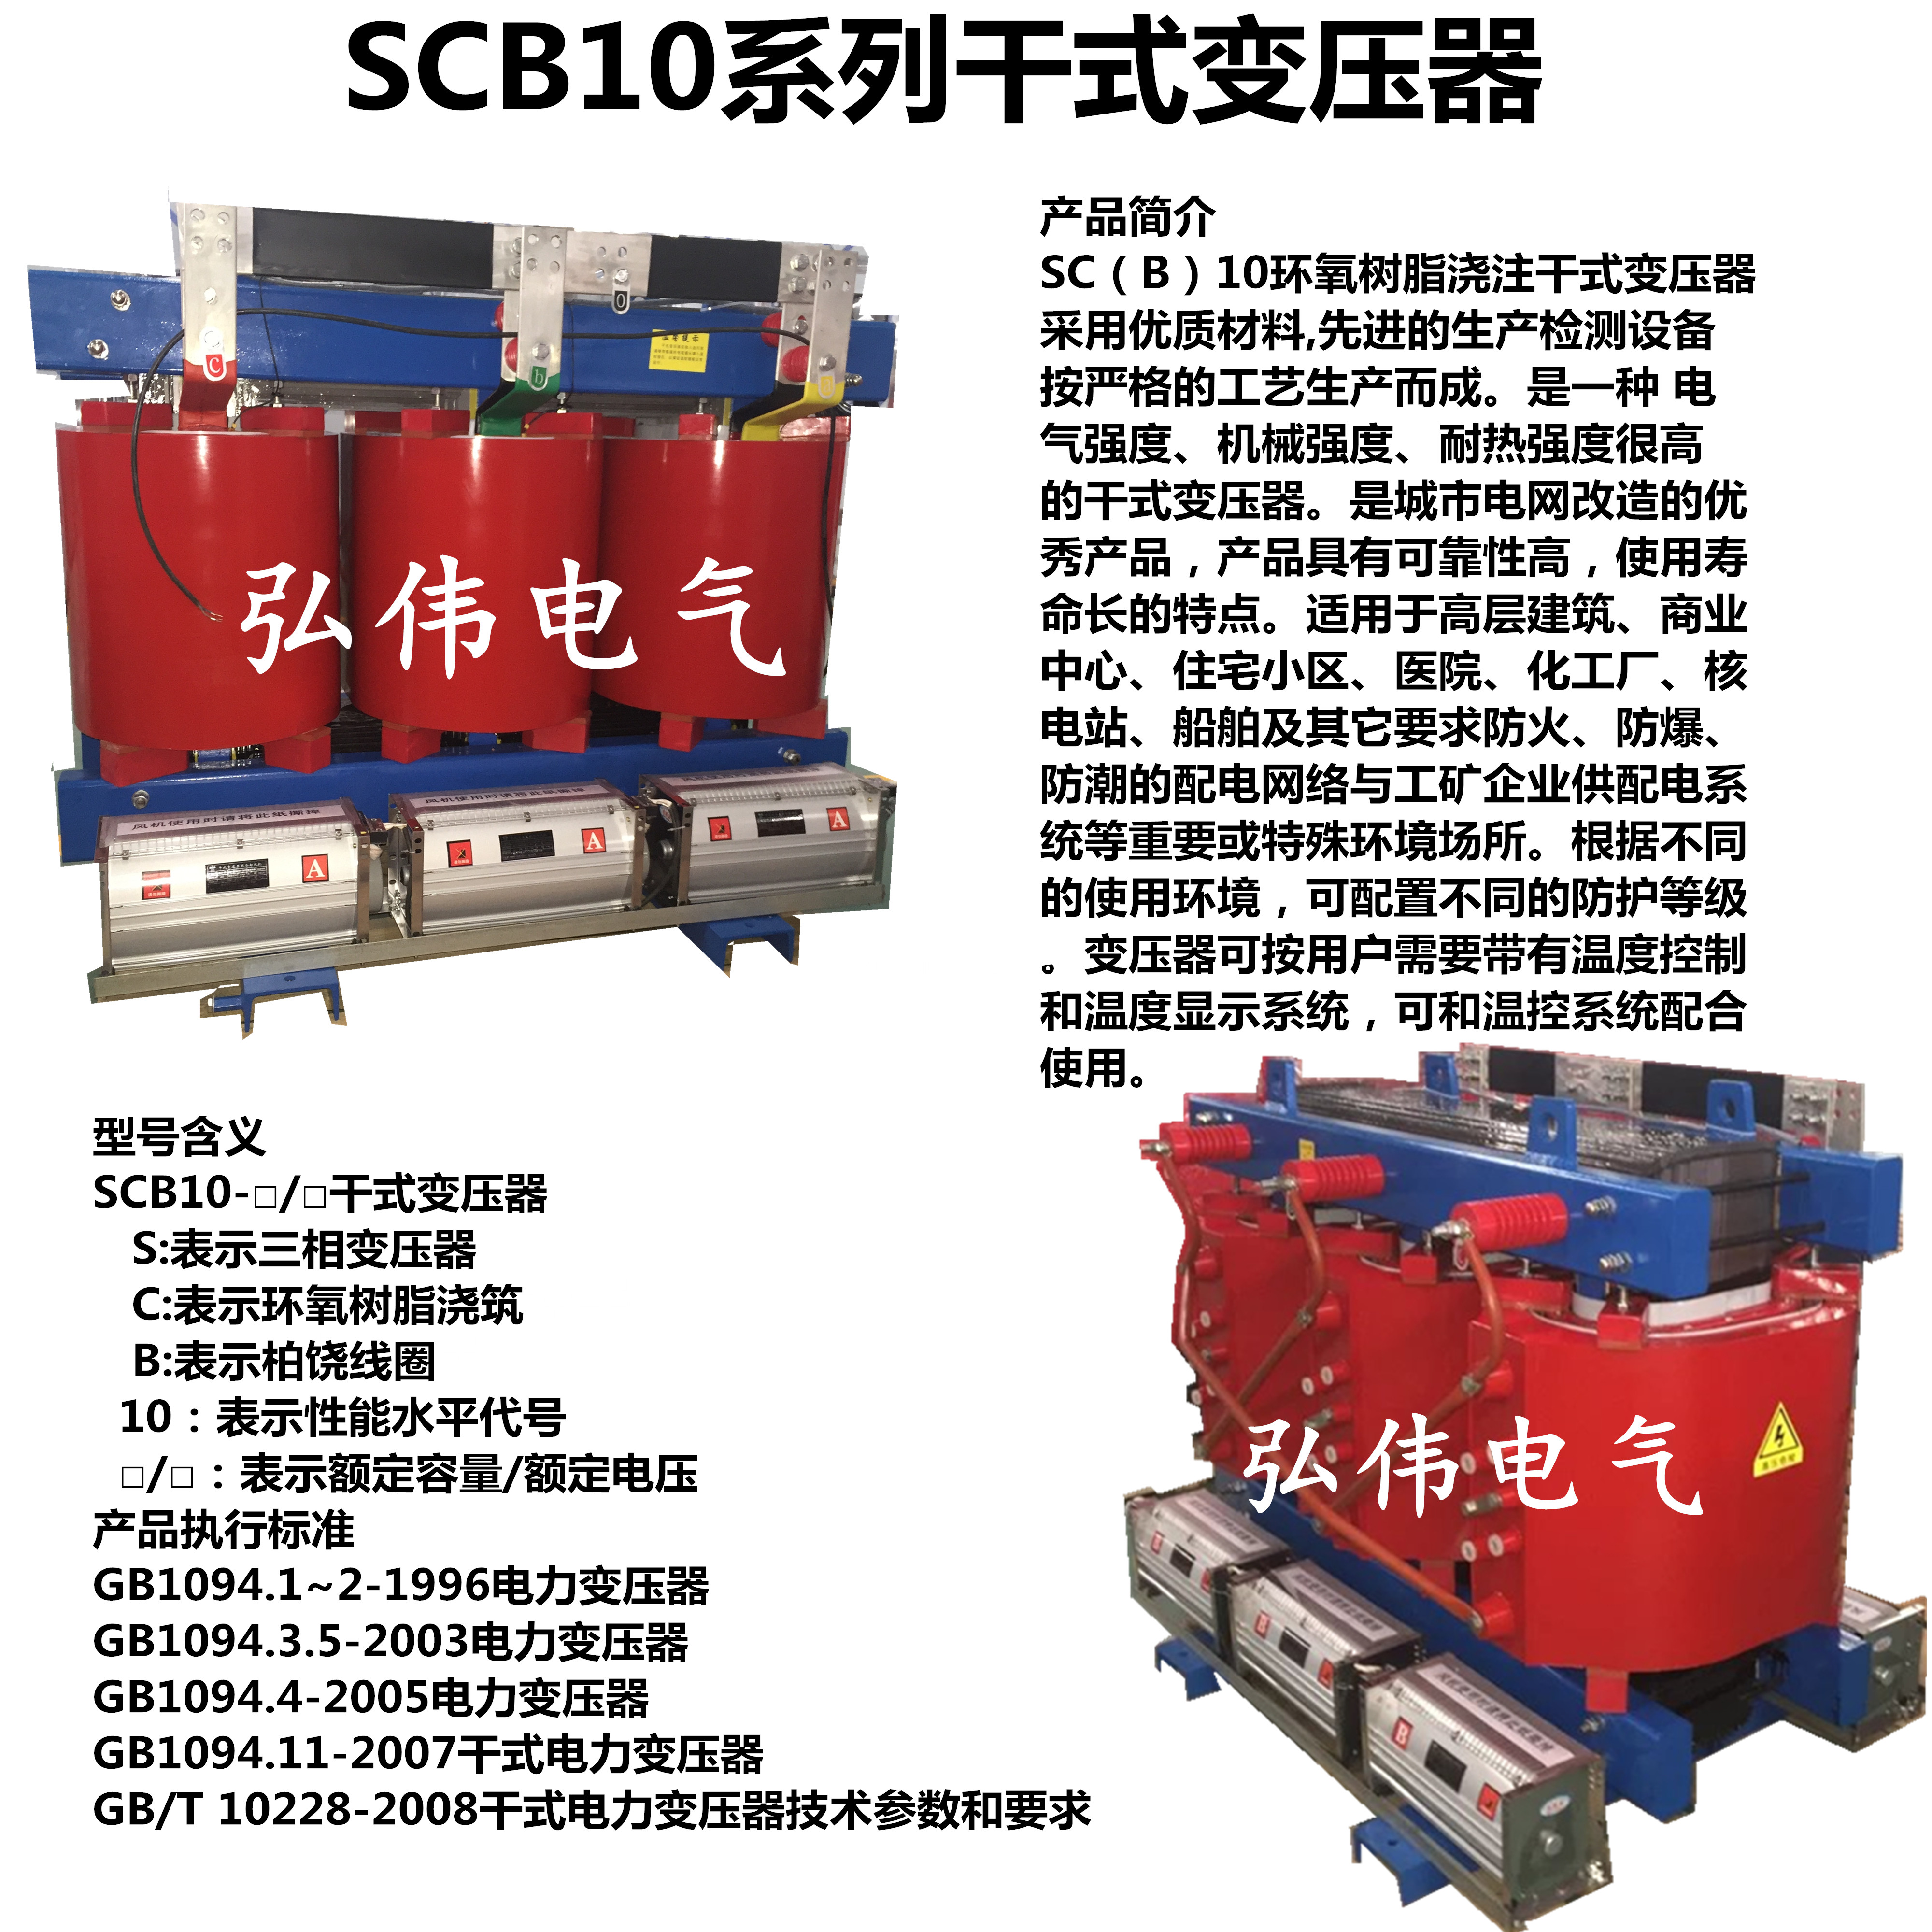 干式变压器厂家直销 SCB10-30-2500KVA,2500KVA,干式变压器,干式变压器厂家,干式变压器厂家直销